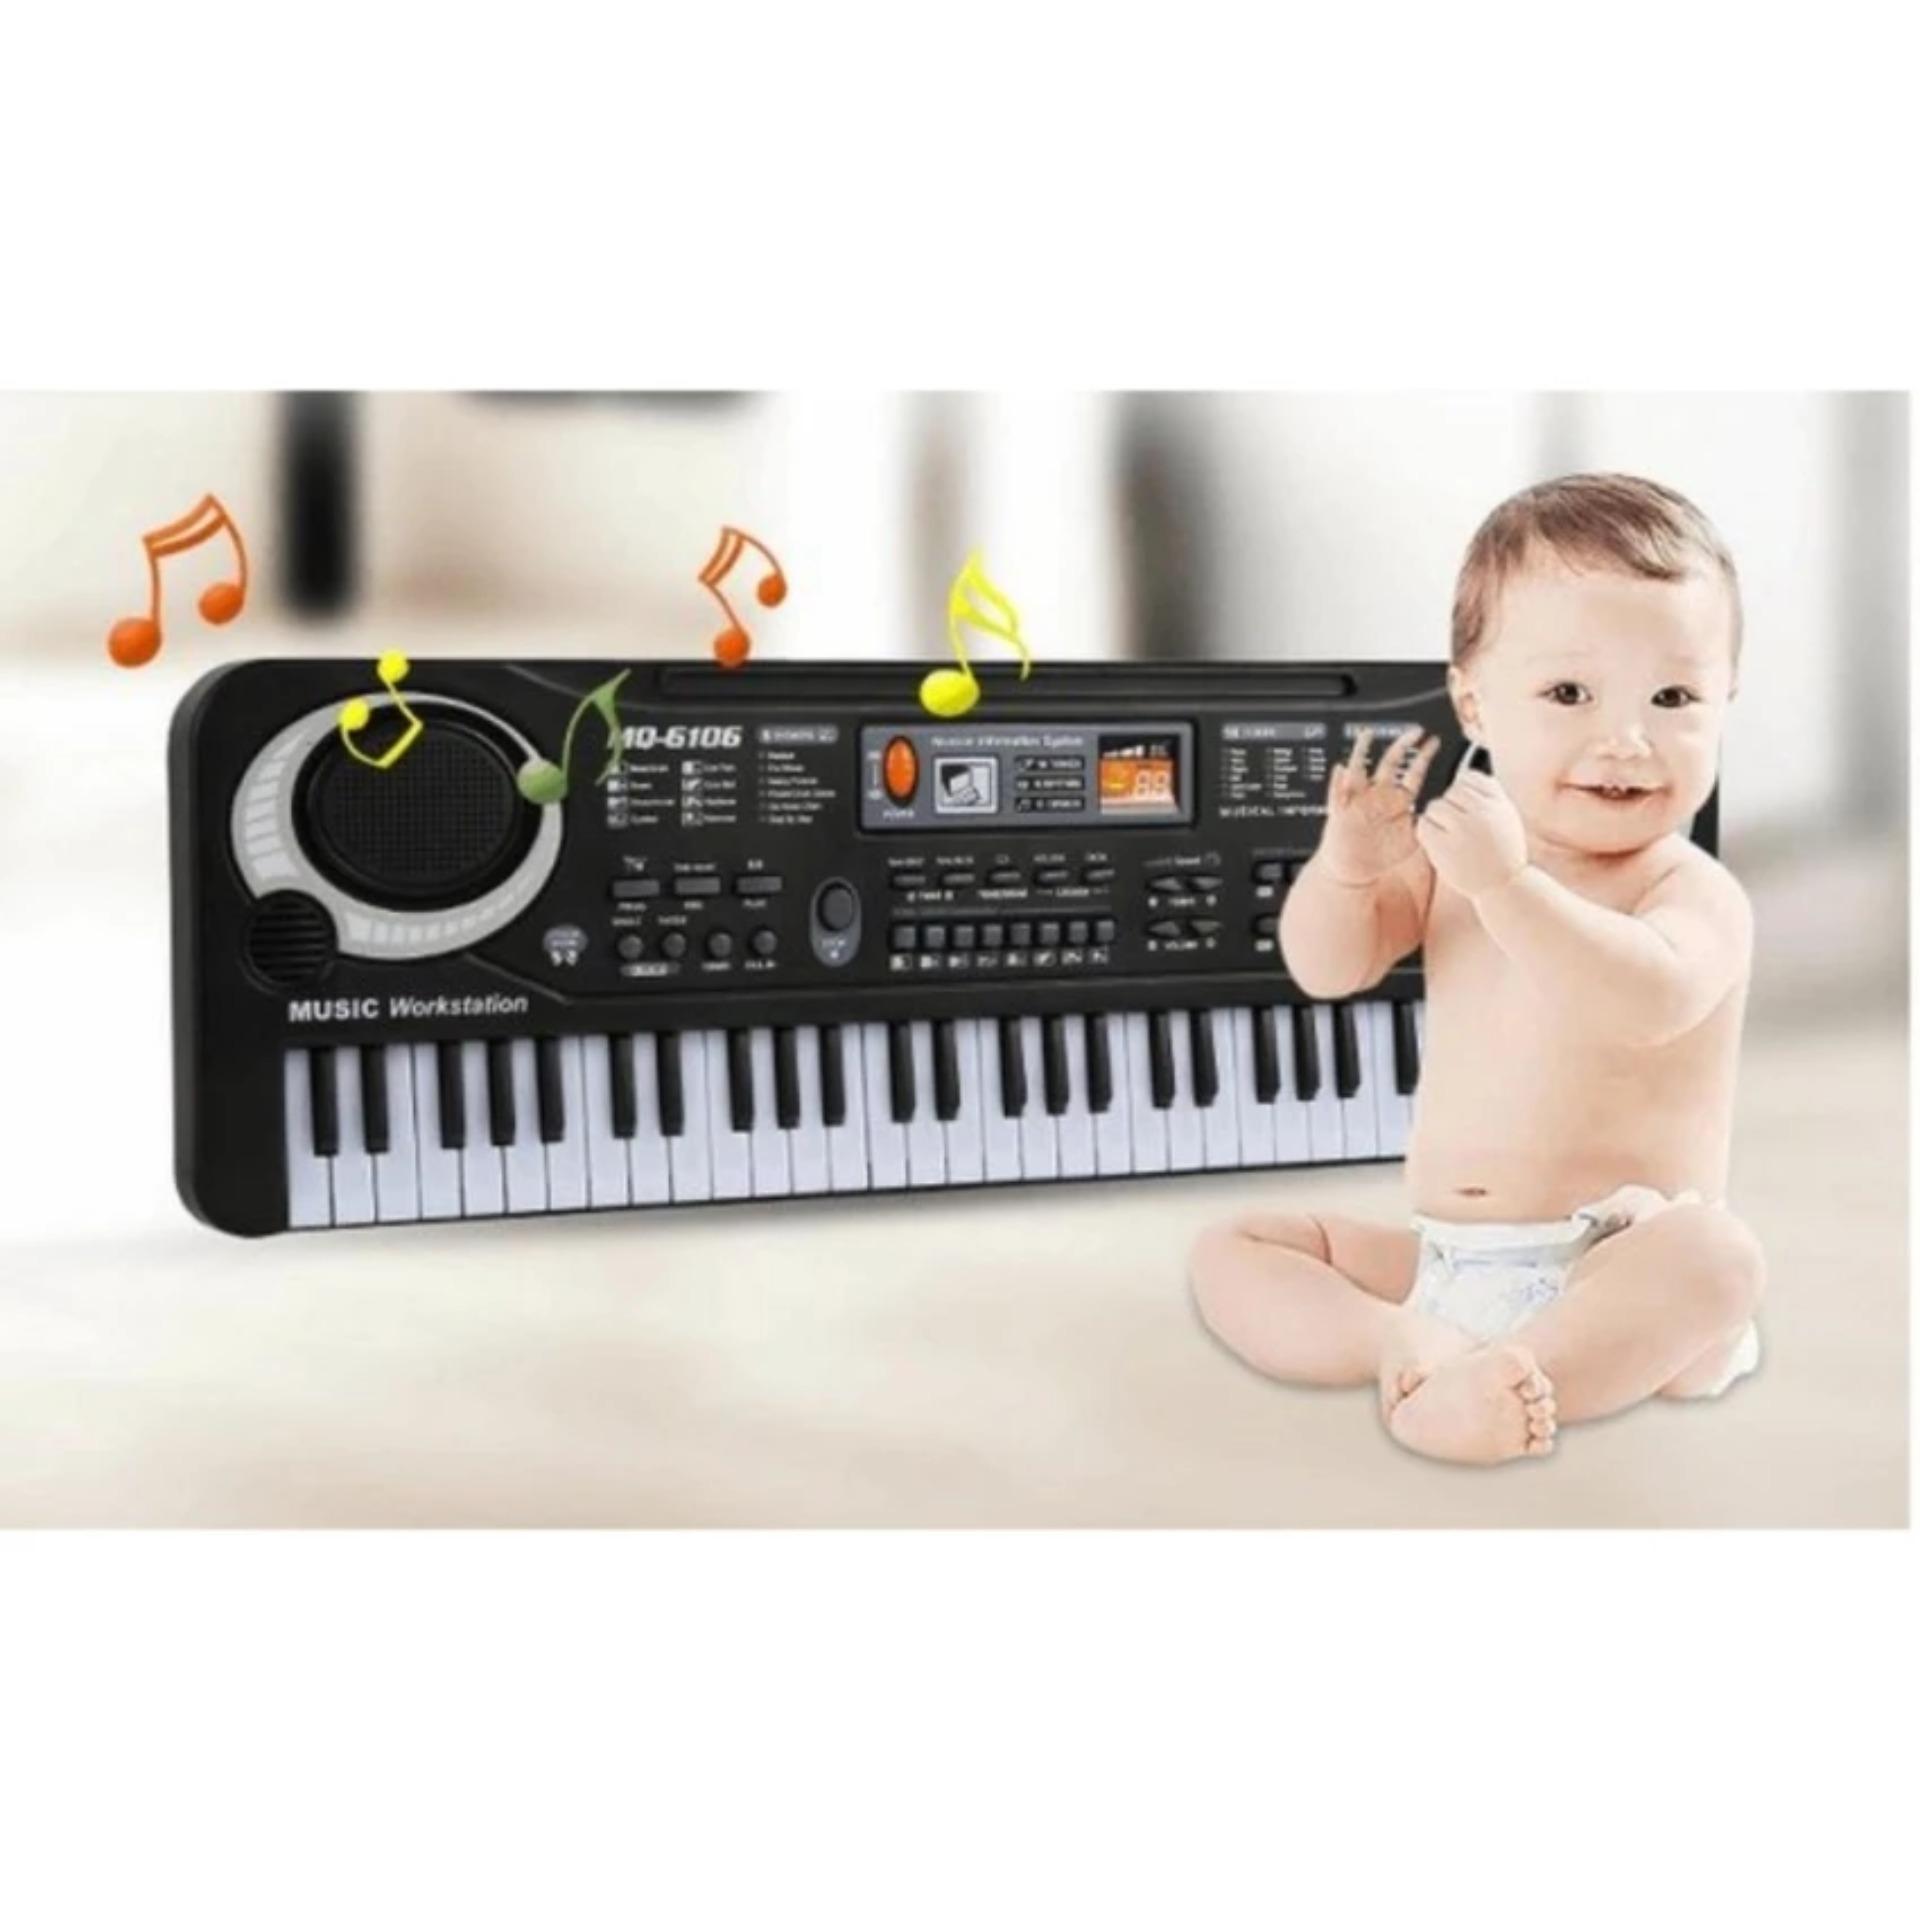 Bộ đàn Organ 61 phím MQ-6106 có Micro dành cho trẻ em - Kmart